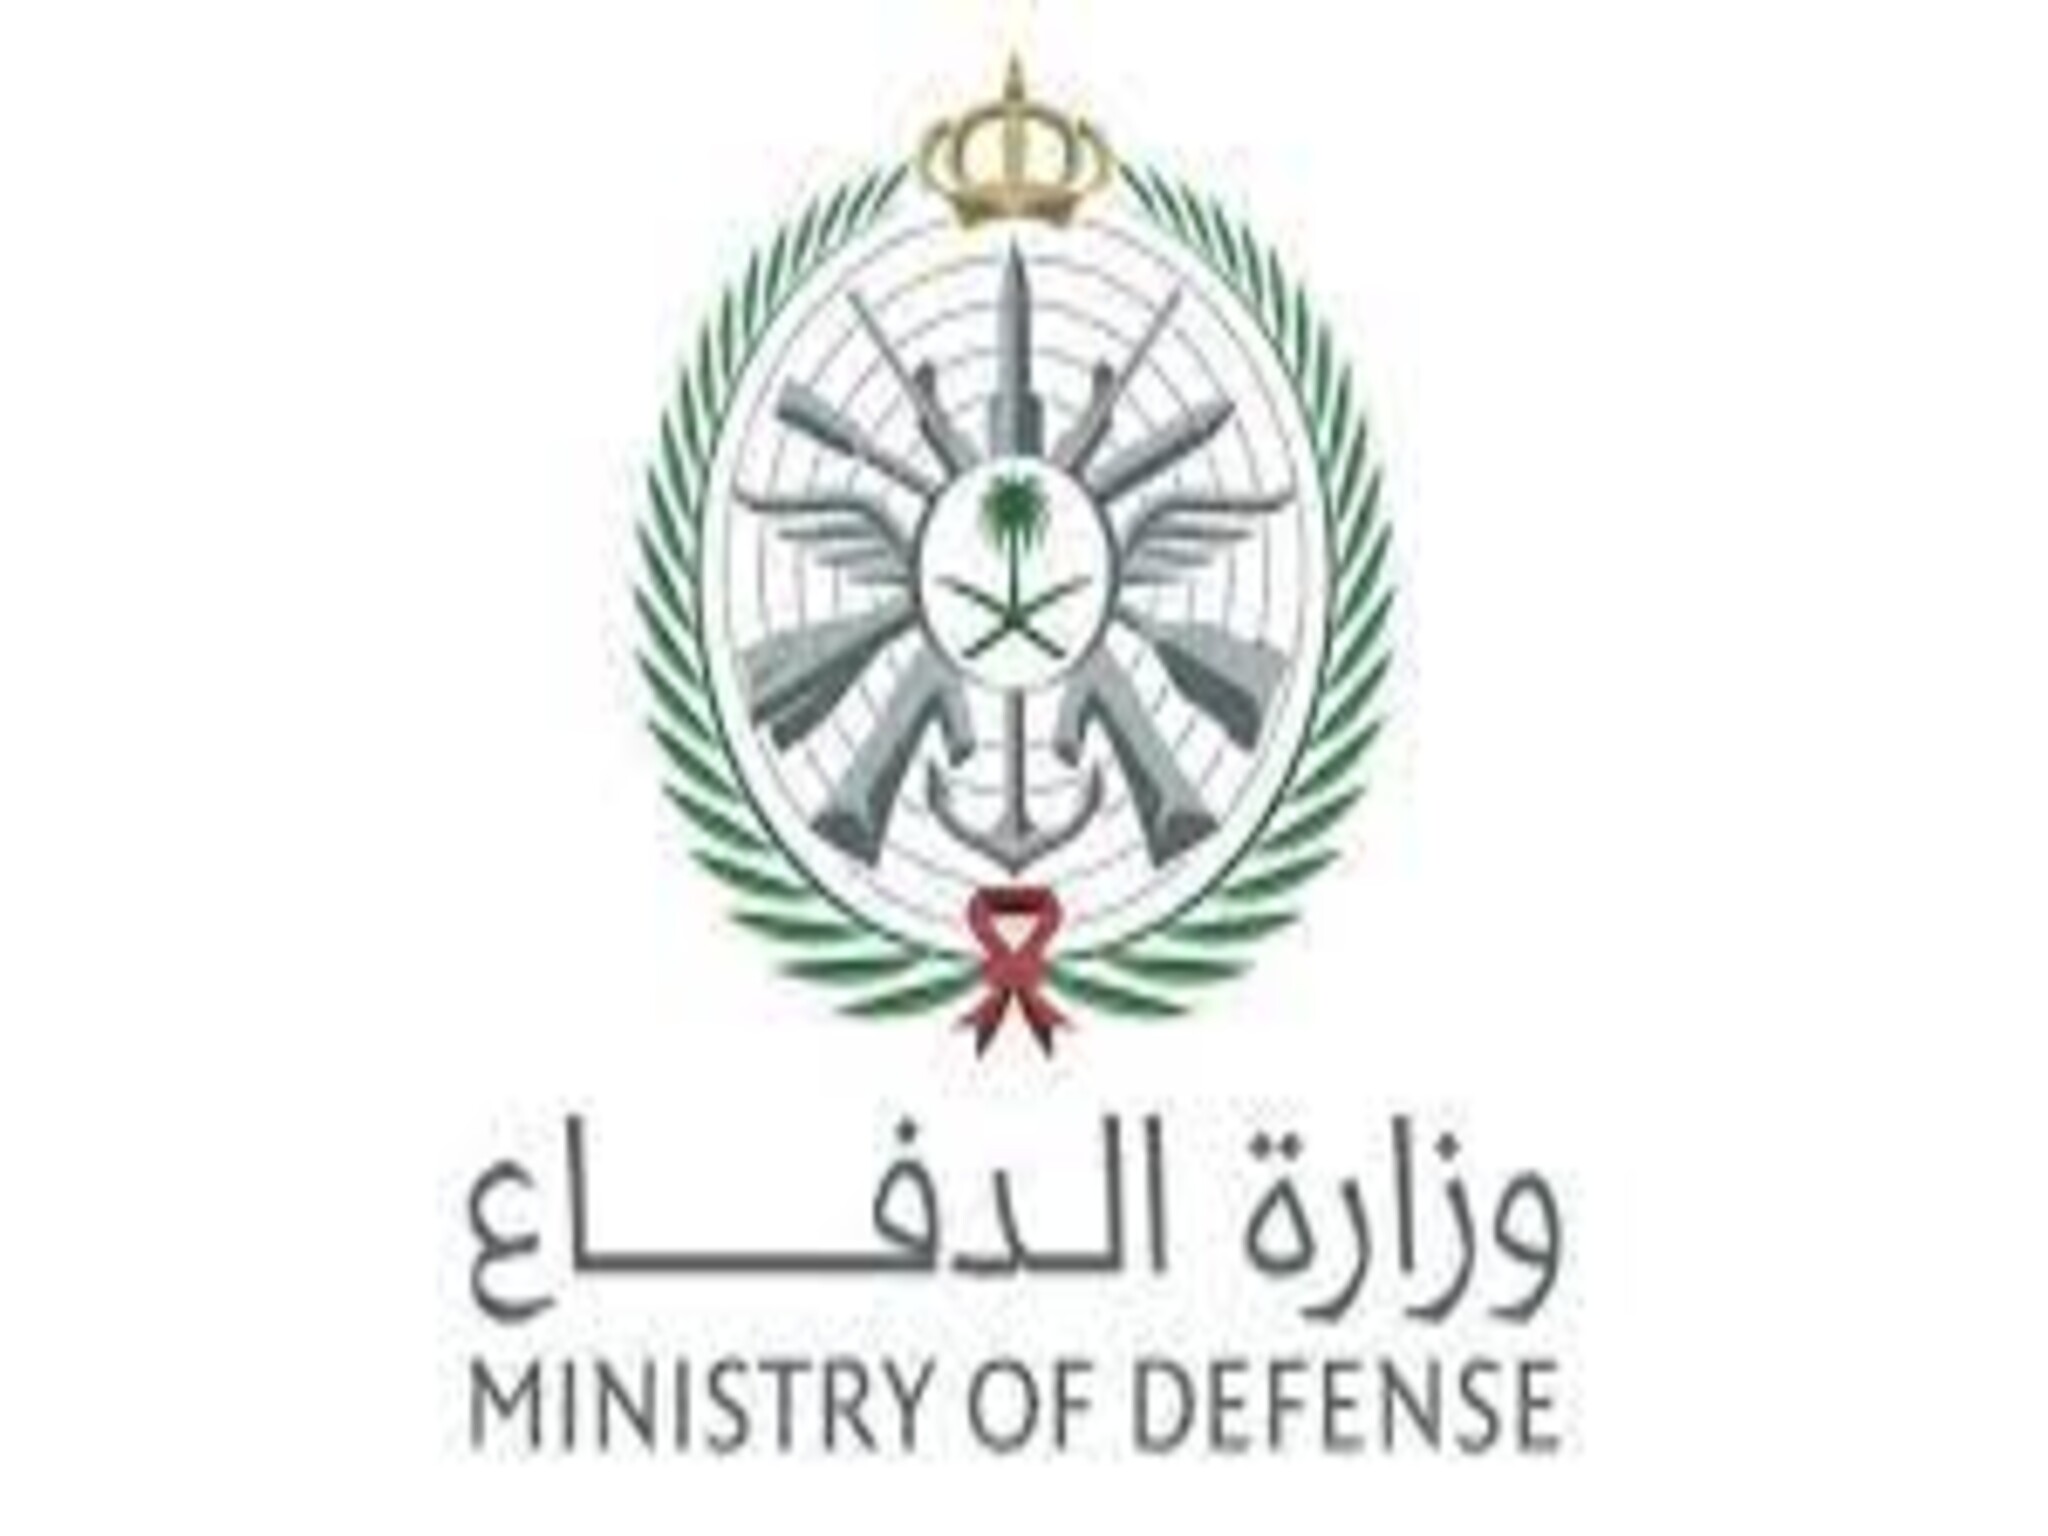 التخصصات المطلوبة للتقديم في وزارة الدفاع 1444 - 2023